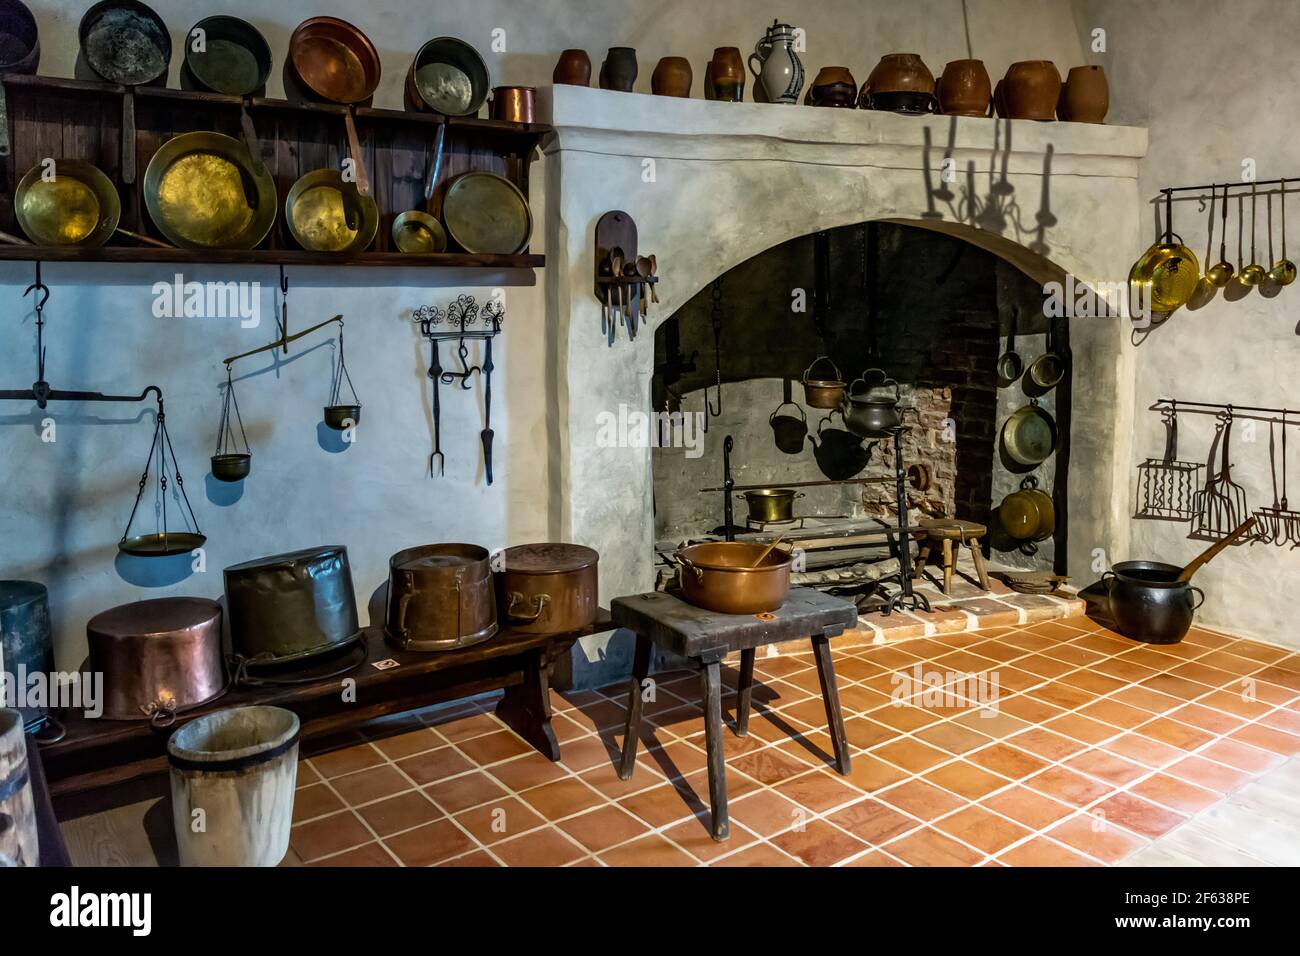 Interiores del Castillo de Bauska - cocina con latón del siglo 16th-17th, hierro y equipos de cocina de madera Foto de stock